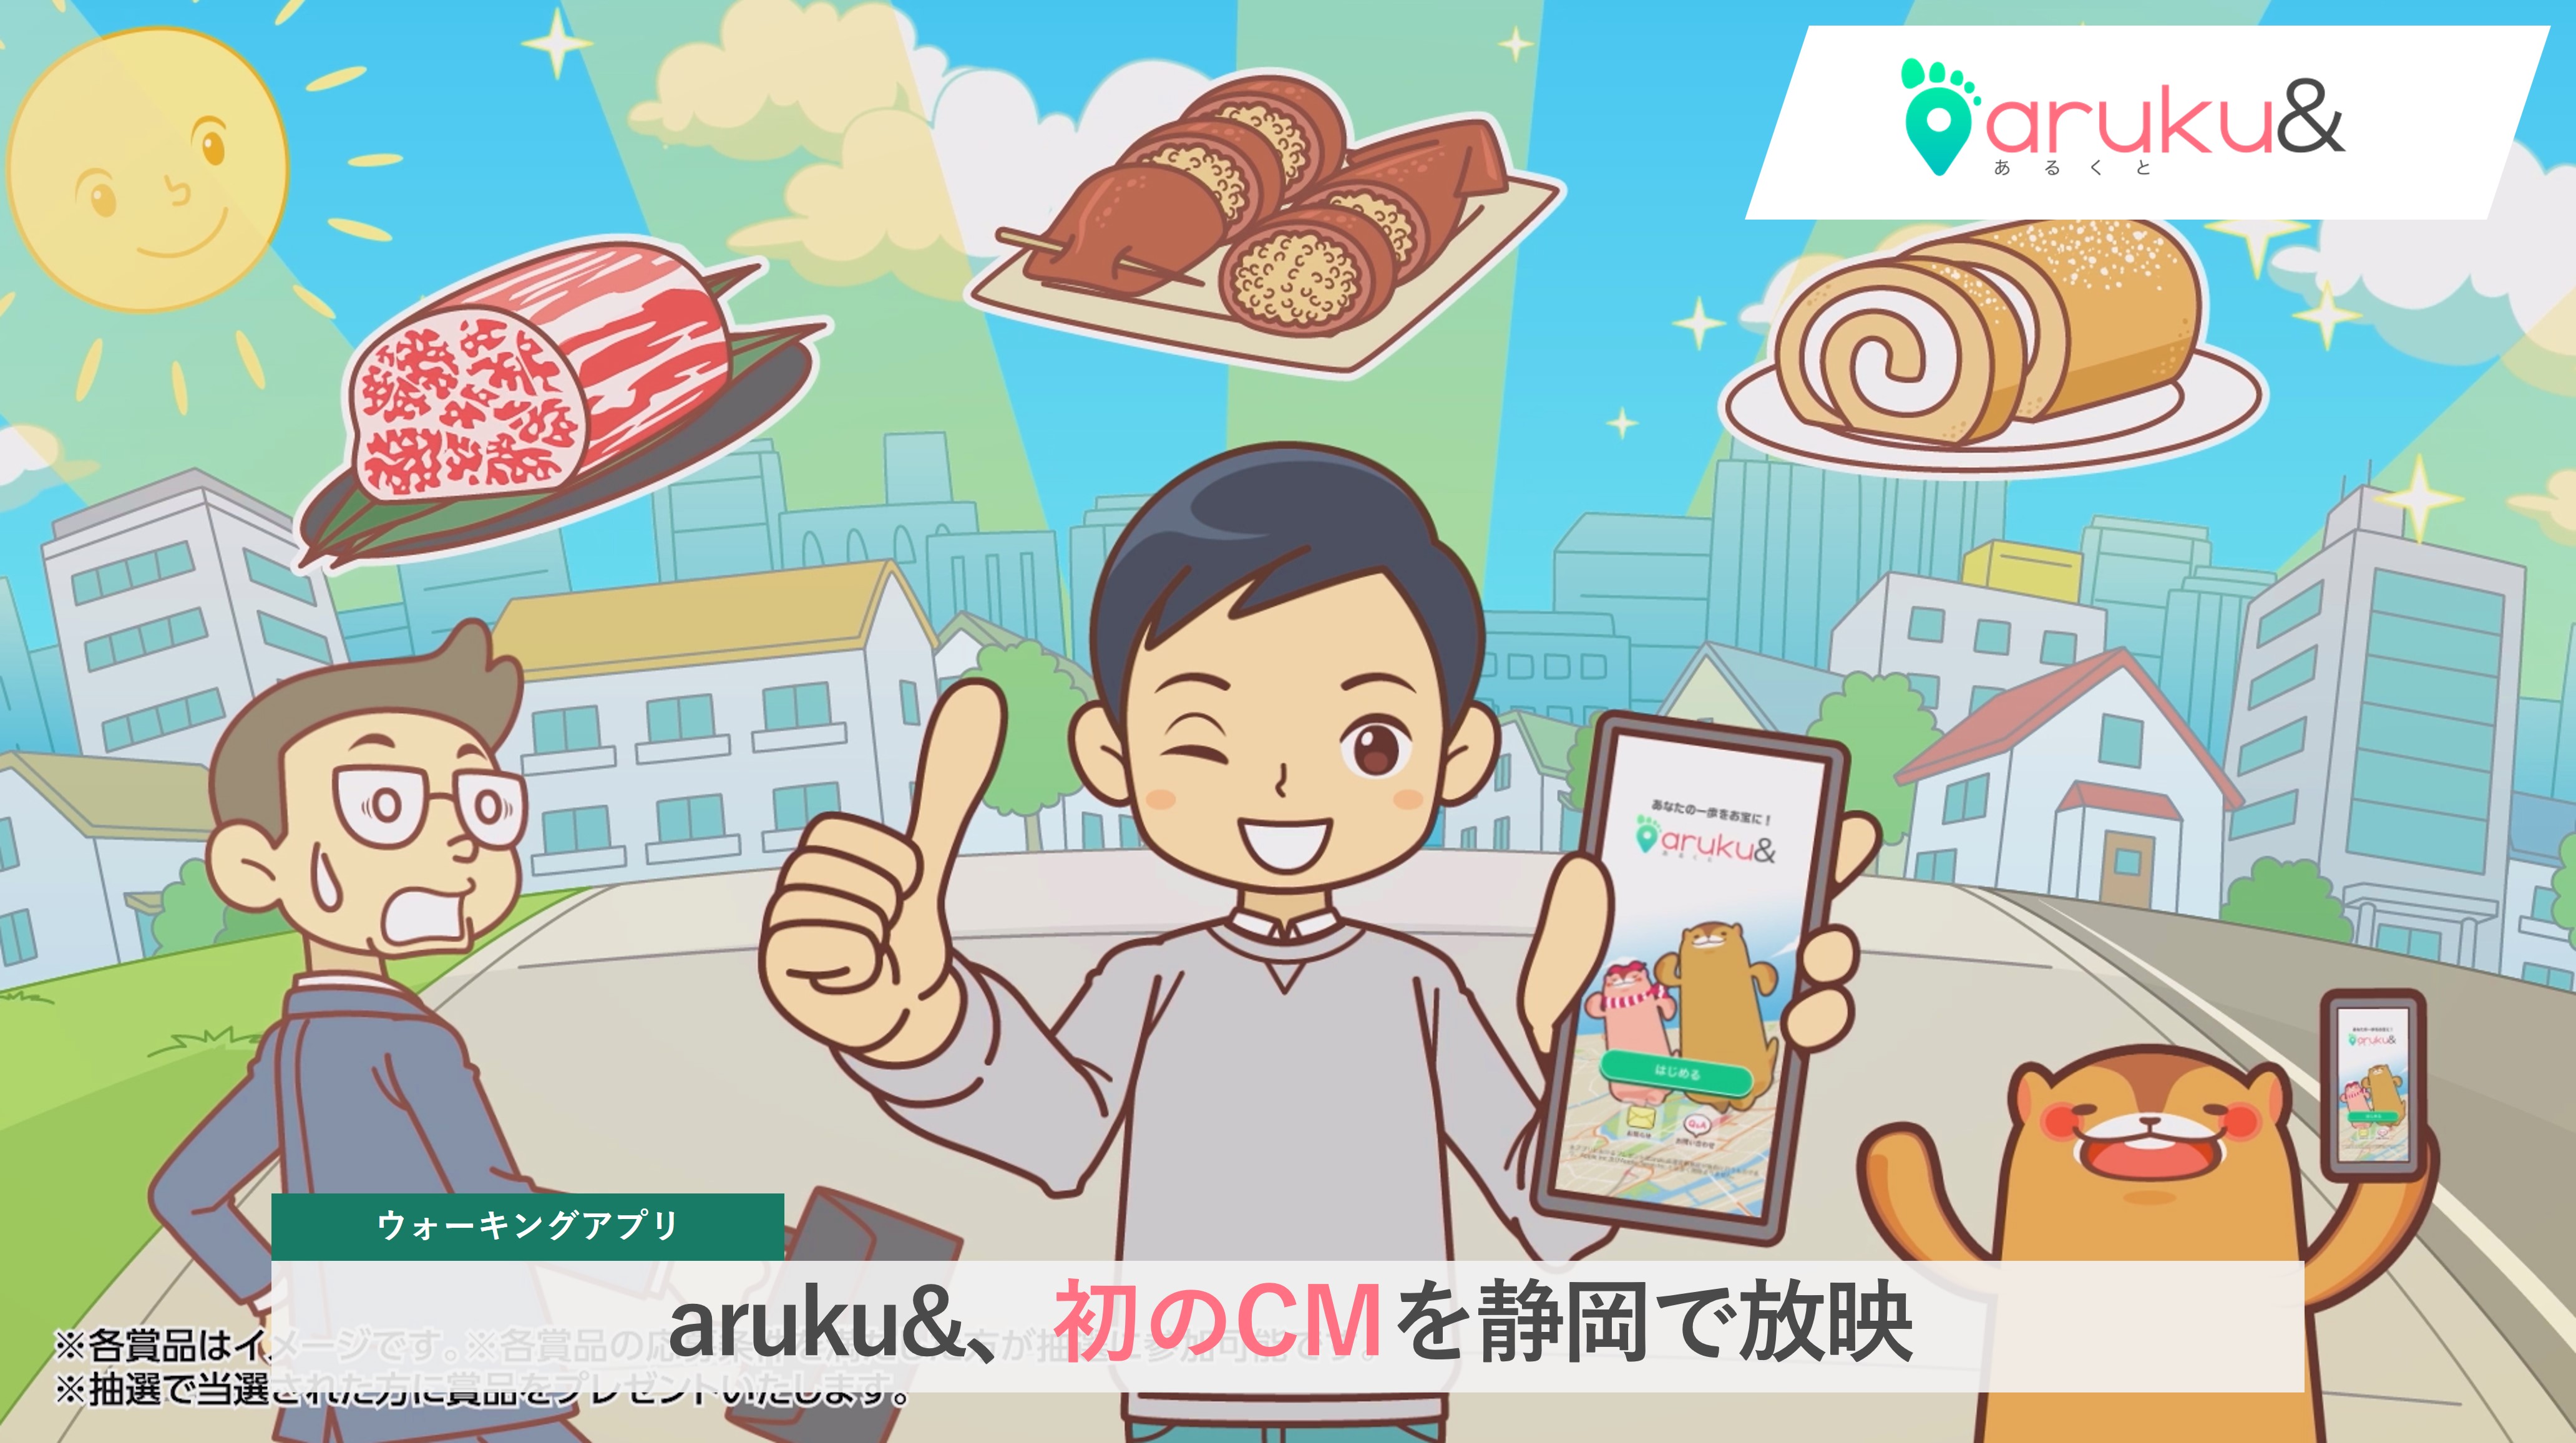 ウォーキングアプリ「aruku&」が初のCMを静岡で放映